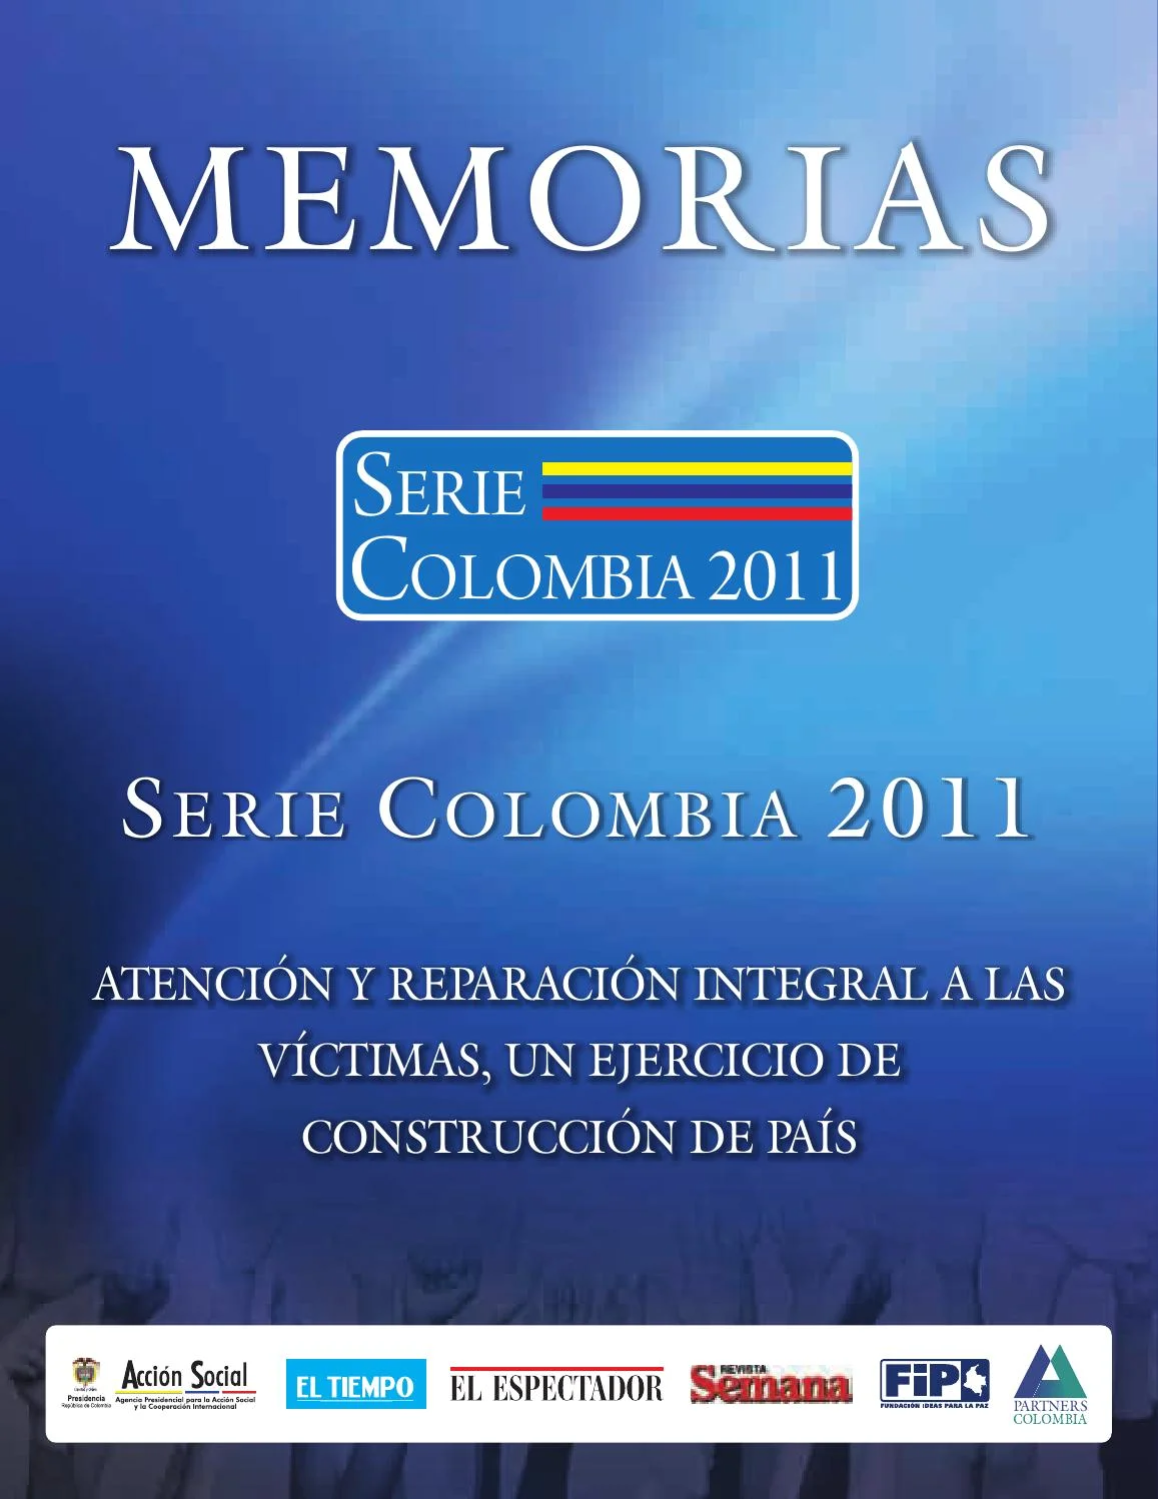 2011 Serie Colombia 2011 Atención y reparación integral a las víctimas, un ejercicio de construcción de país